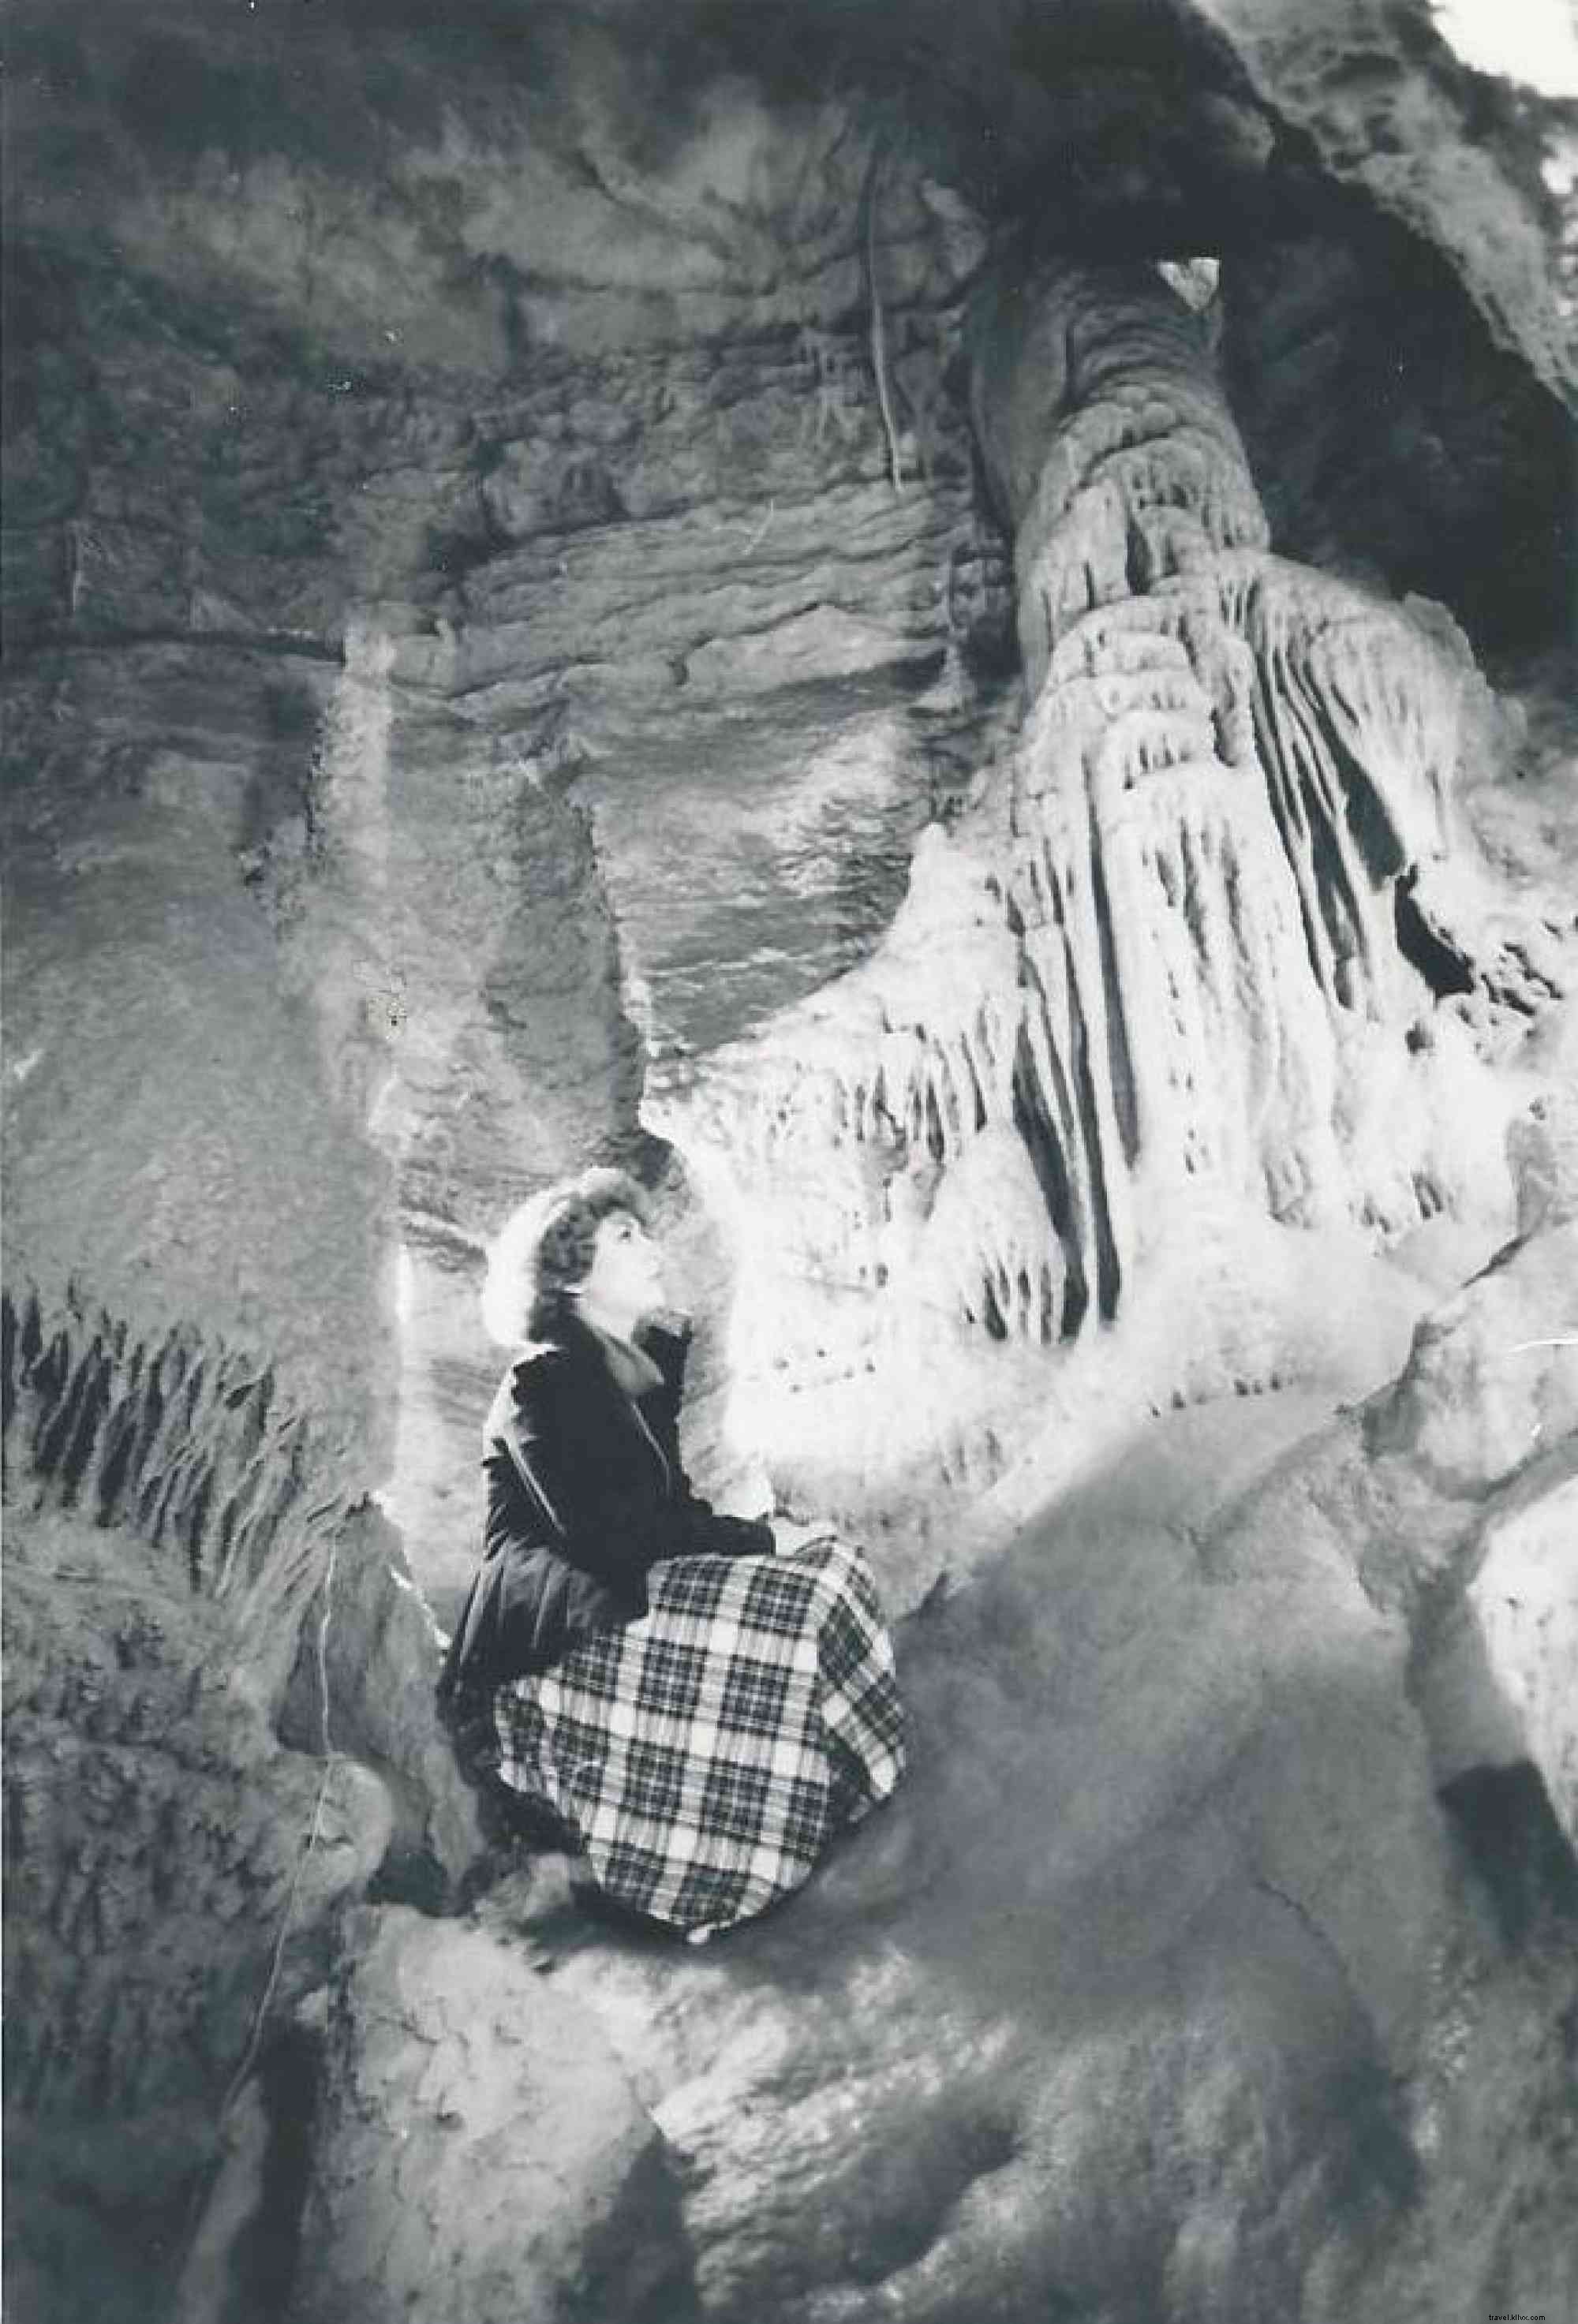 elebrate National Caves &Karst avec Lincoln Caverns &Whisper Rocks 